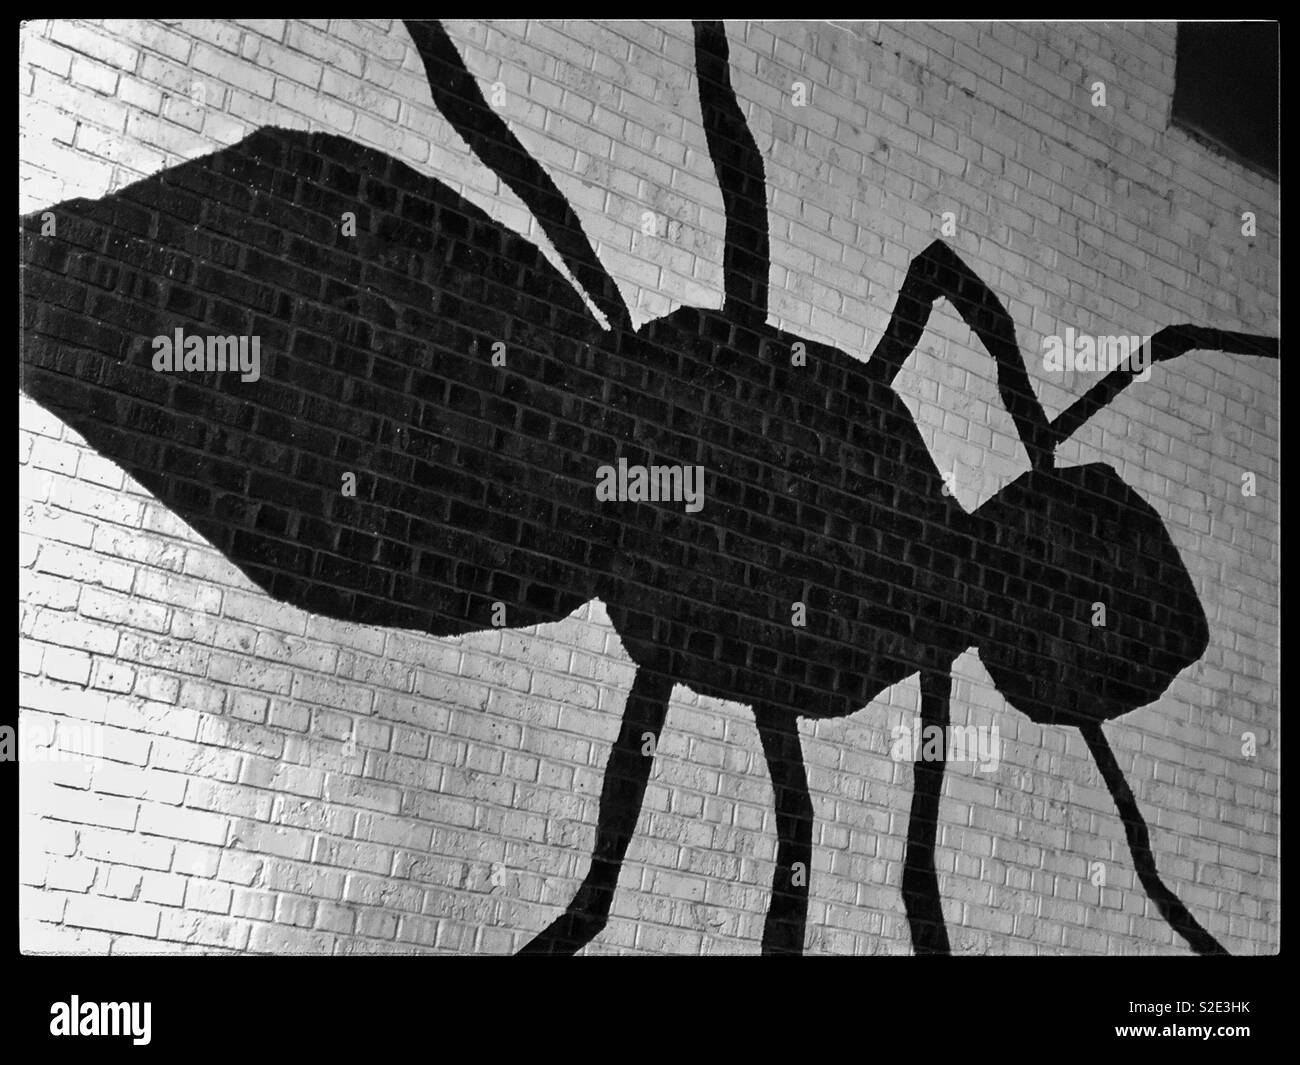 Énorme insecte noir peint sur un mur en brique blanche Banque D'Images